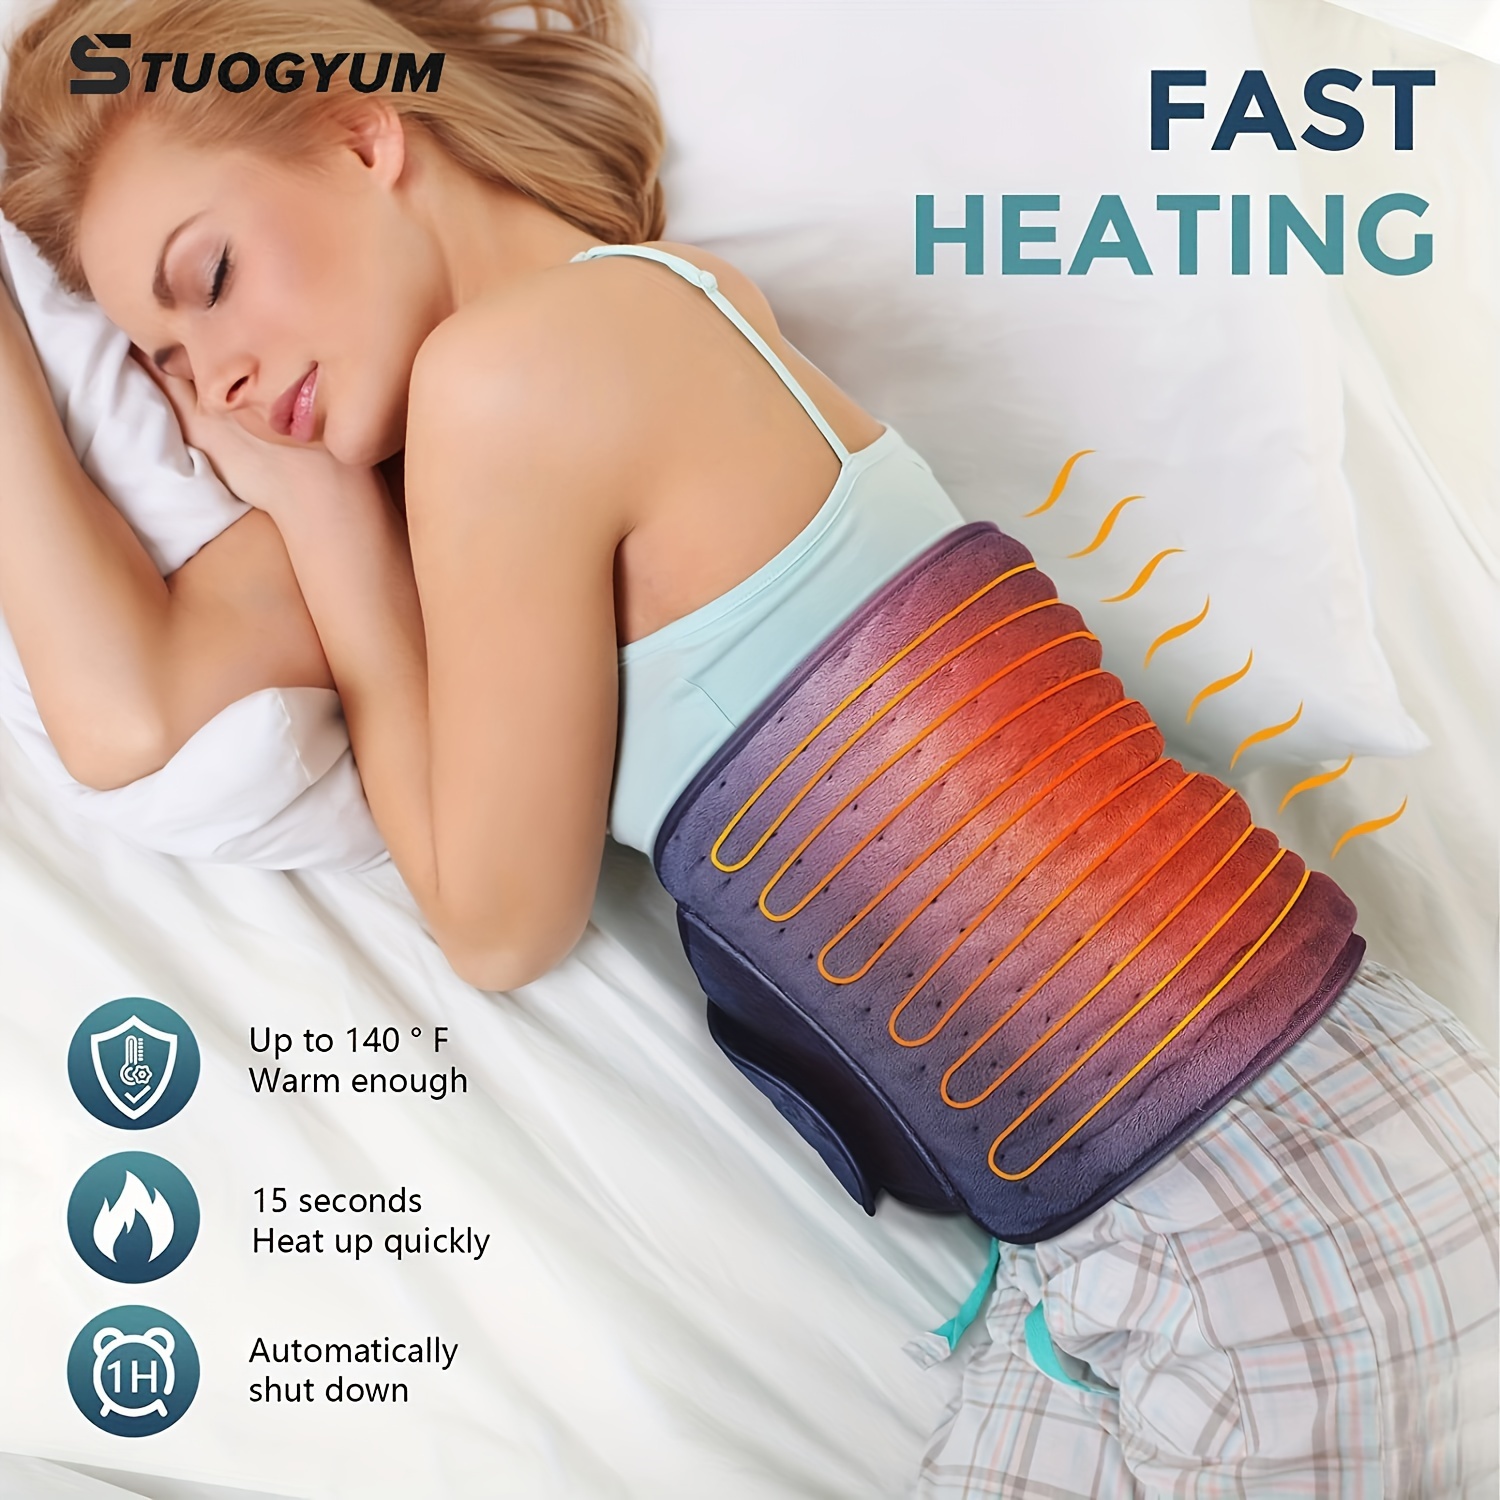 Almohadilla eléctrica de calefacción para espalda, hombros, abdomen,  piernas, brazos, almohadilla térmica eléctrica con ajustes de calor,  apagado